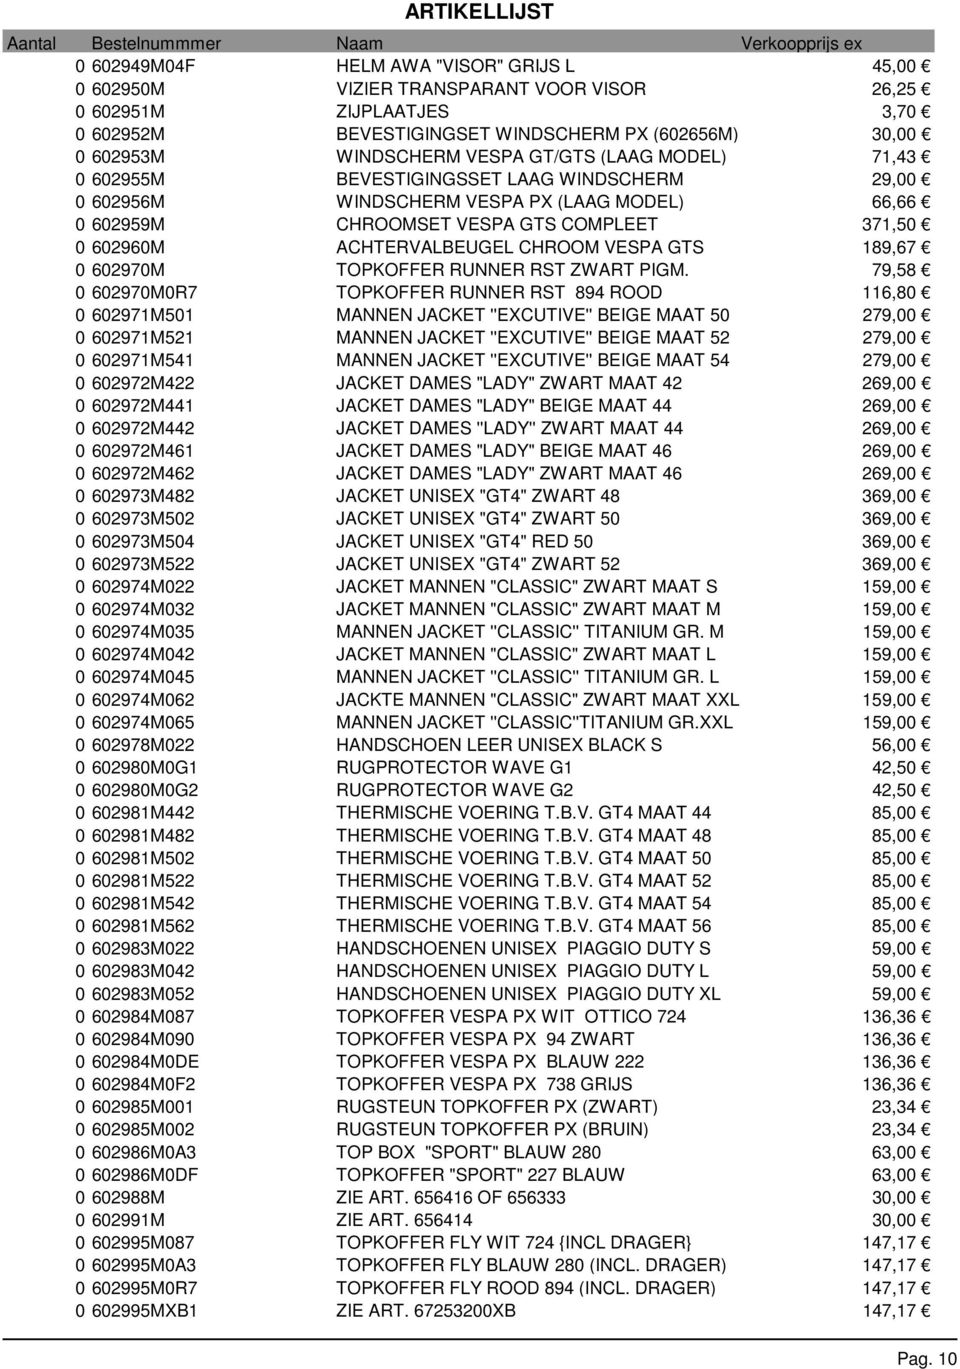 CHROOM VESPA GTS 189,67 0 602970M TOPKOFFER RUNNER RST ZWART PIGM.